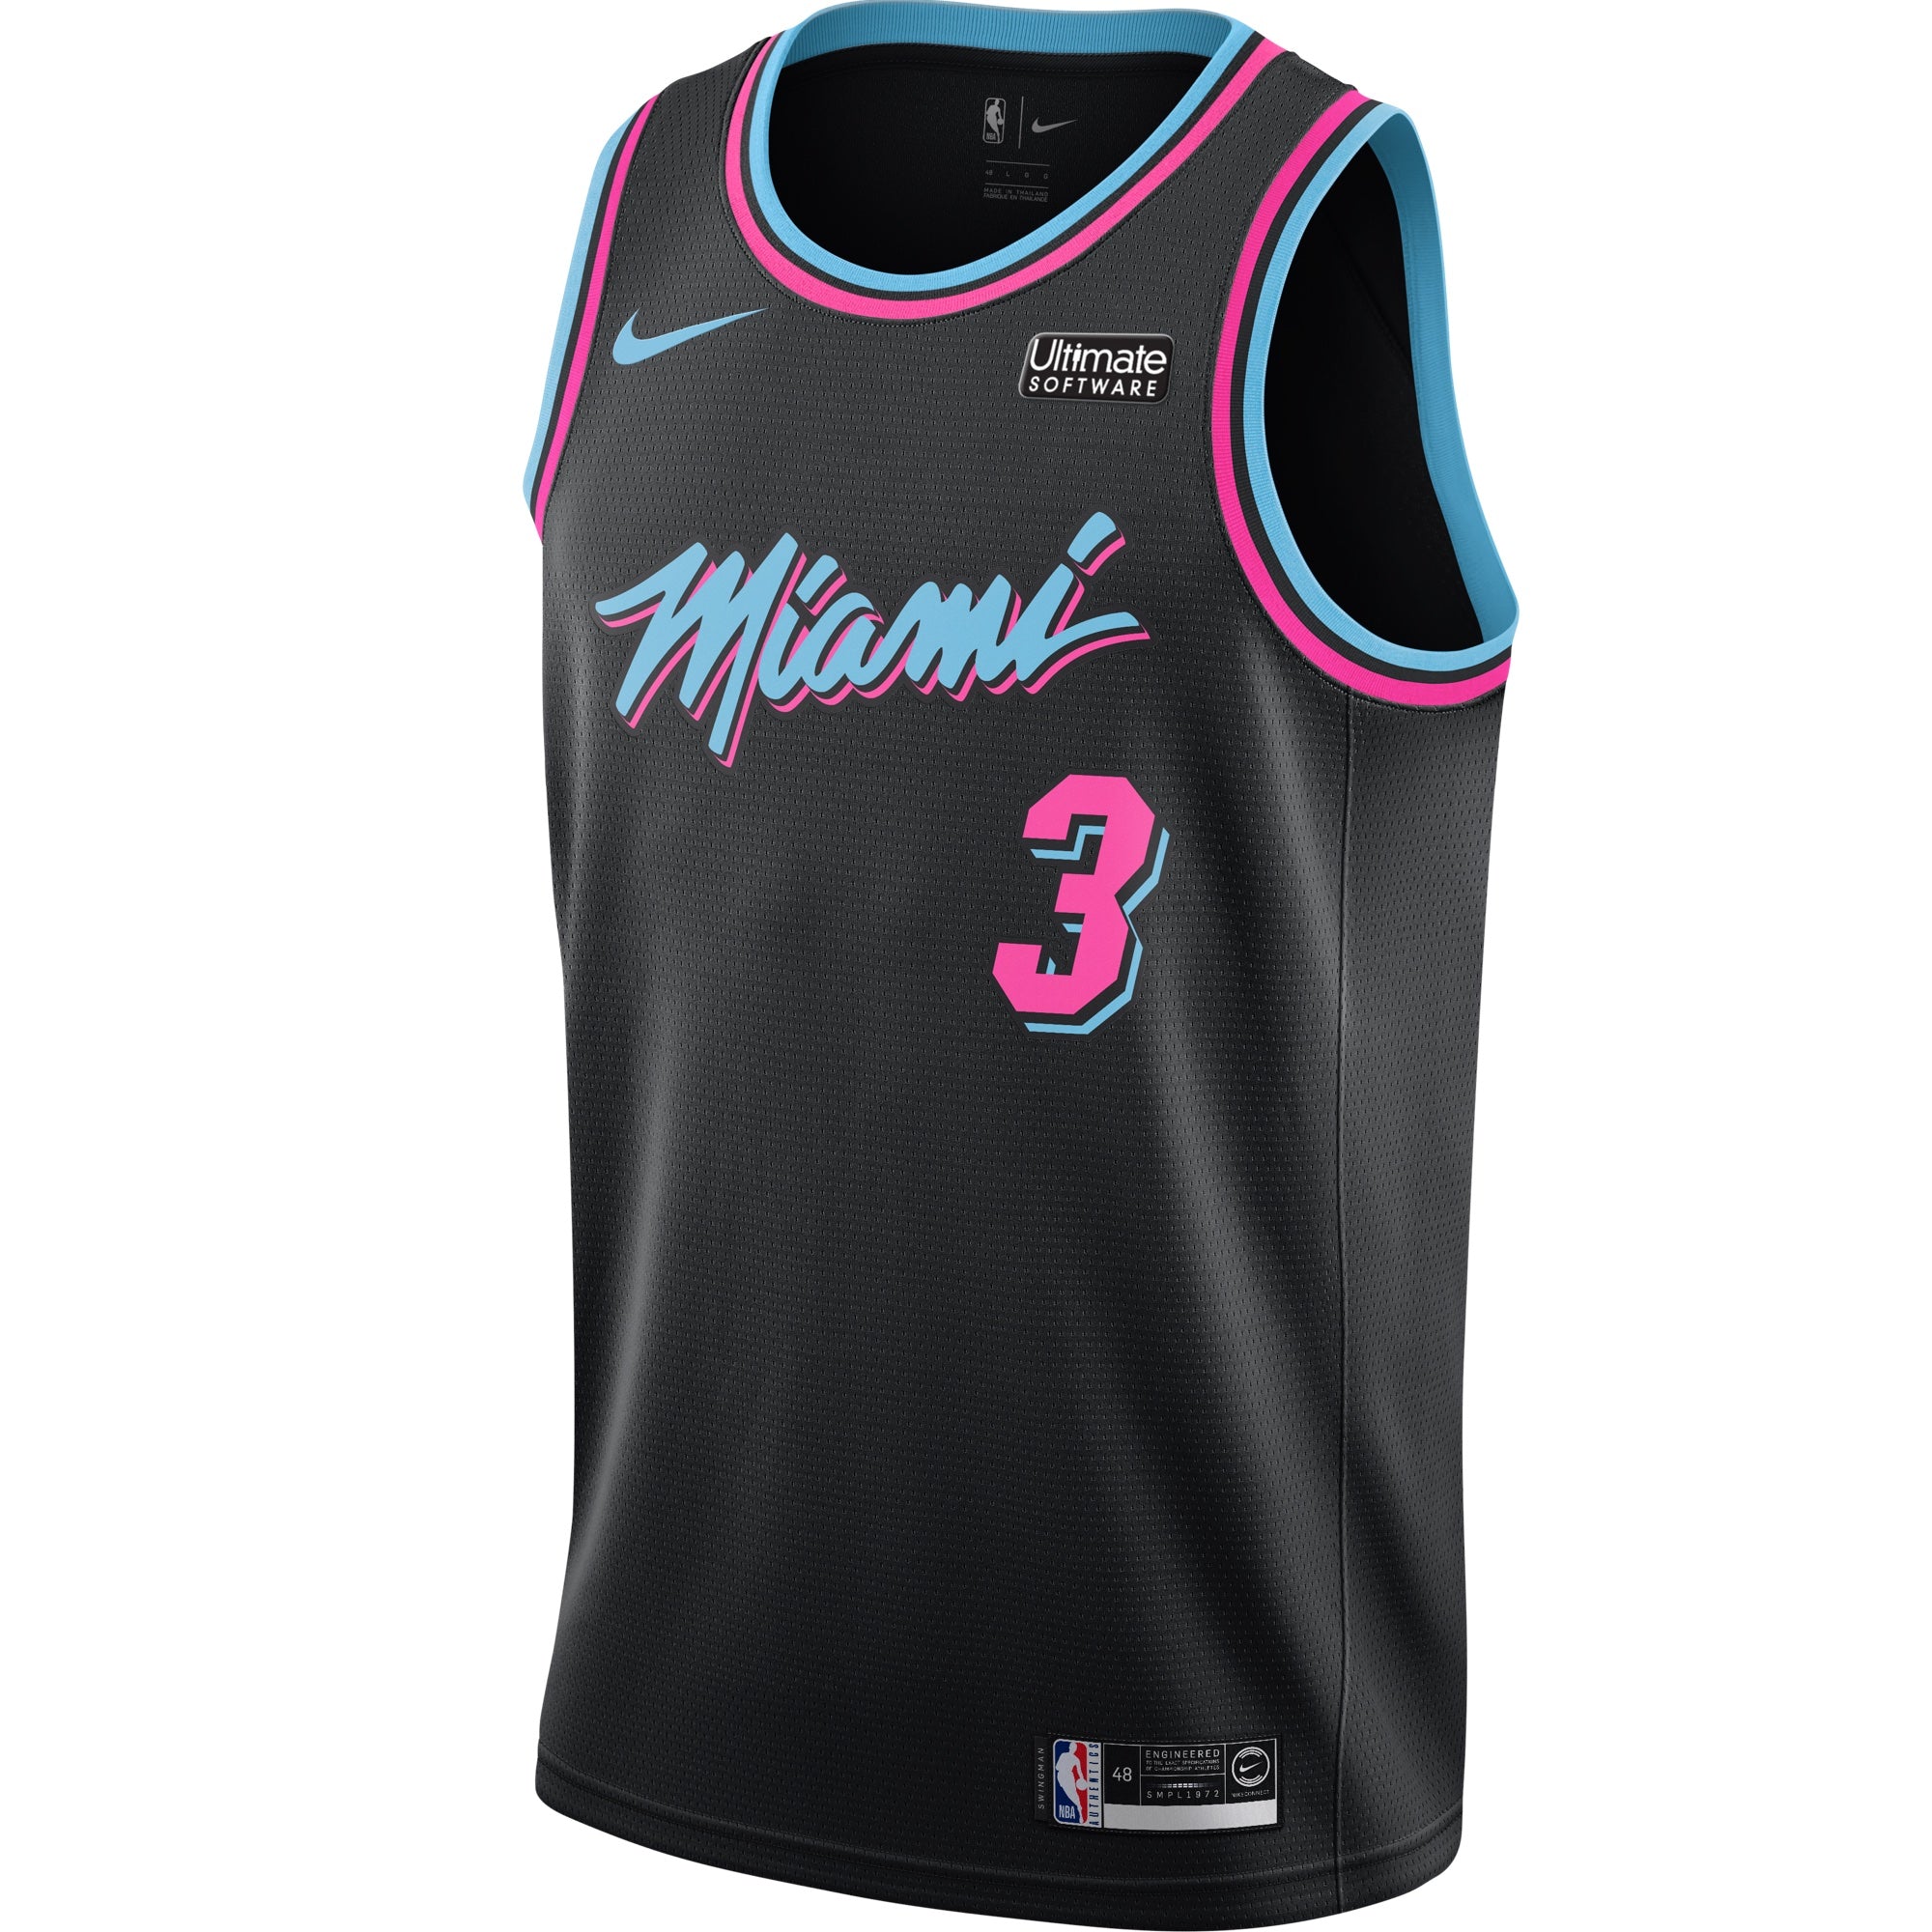 Nba Miami Heat Jersey Vice | lupon.gov.ph